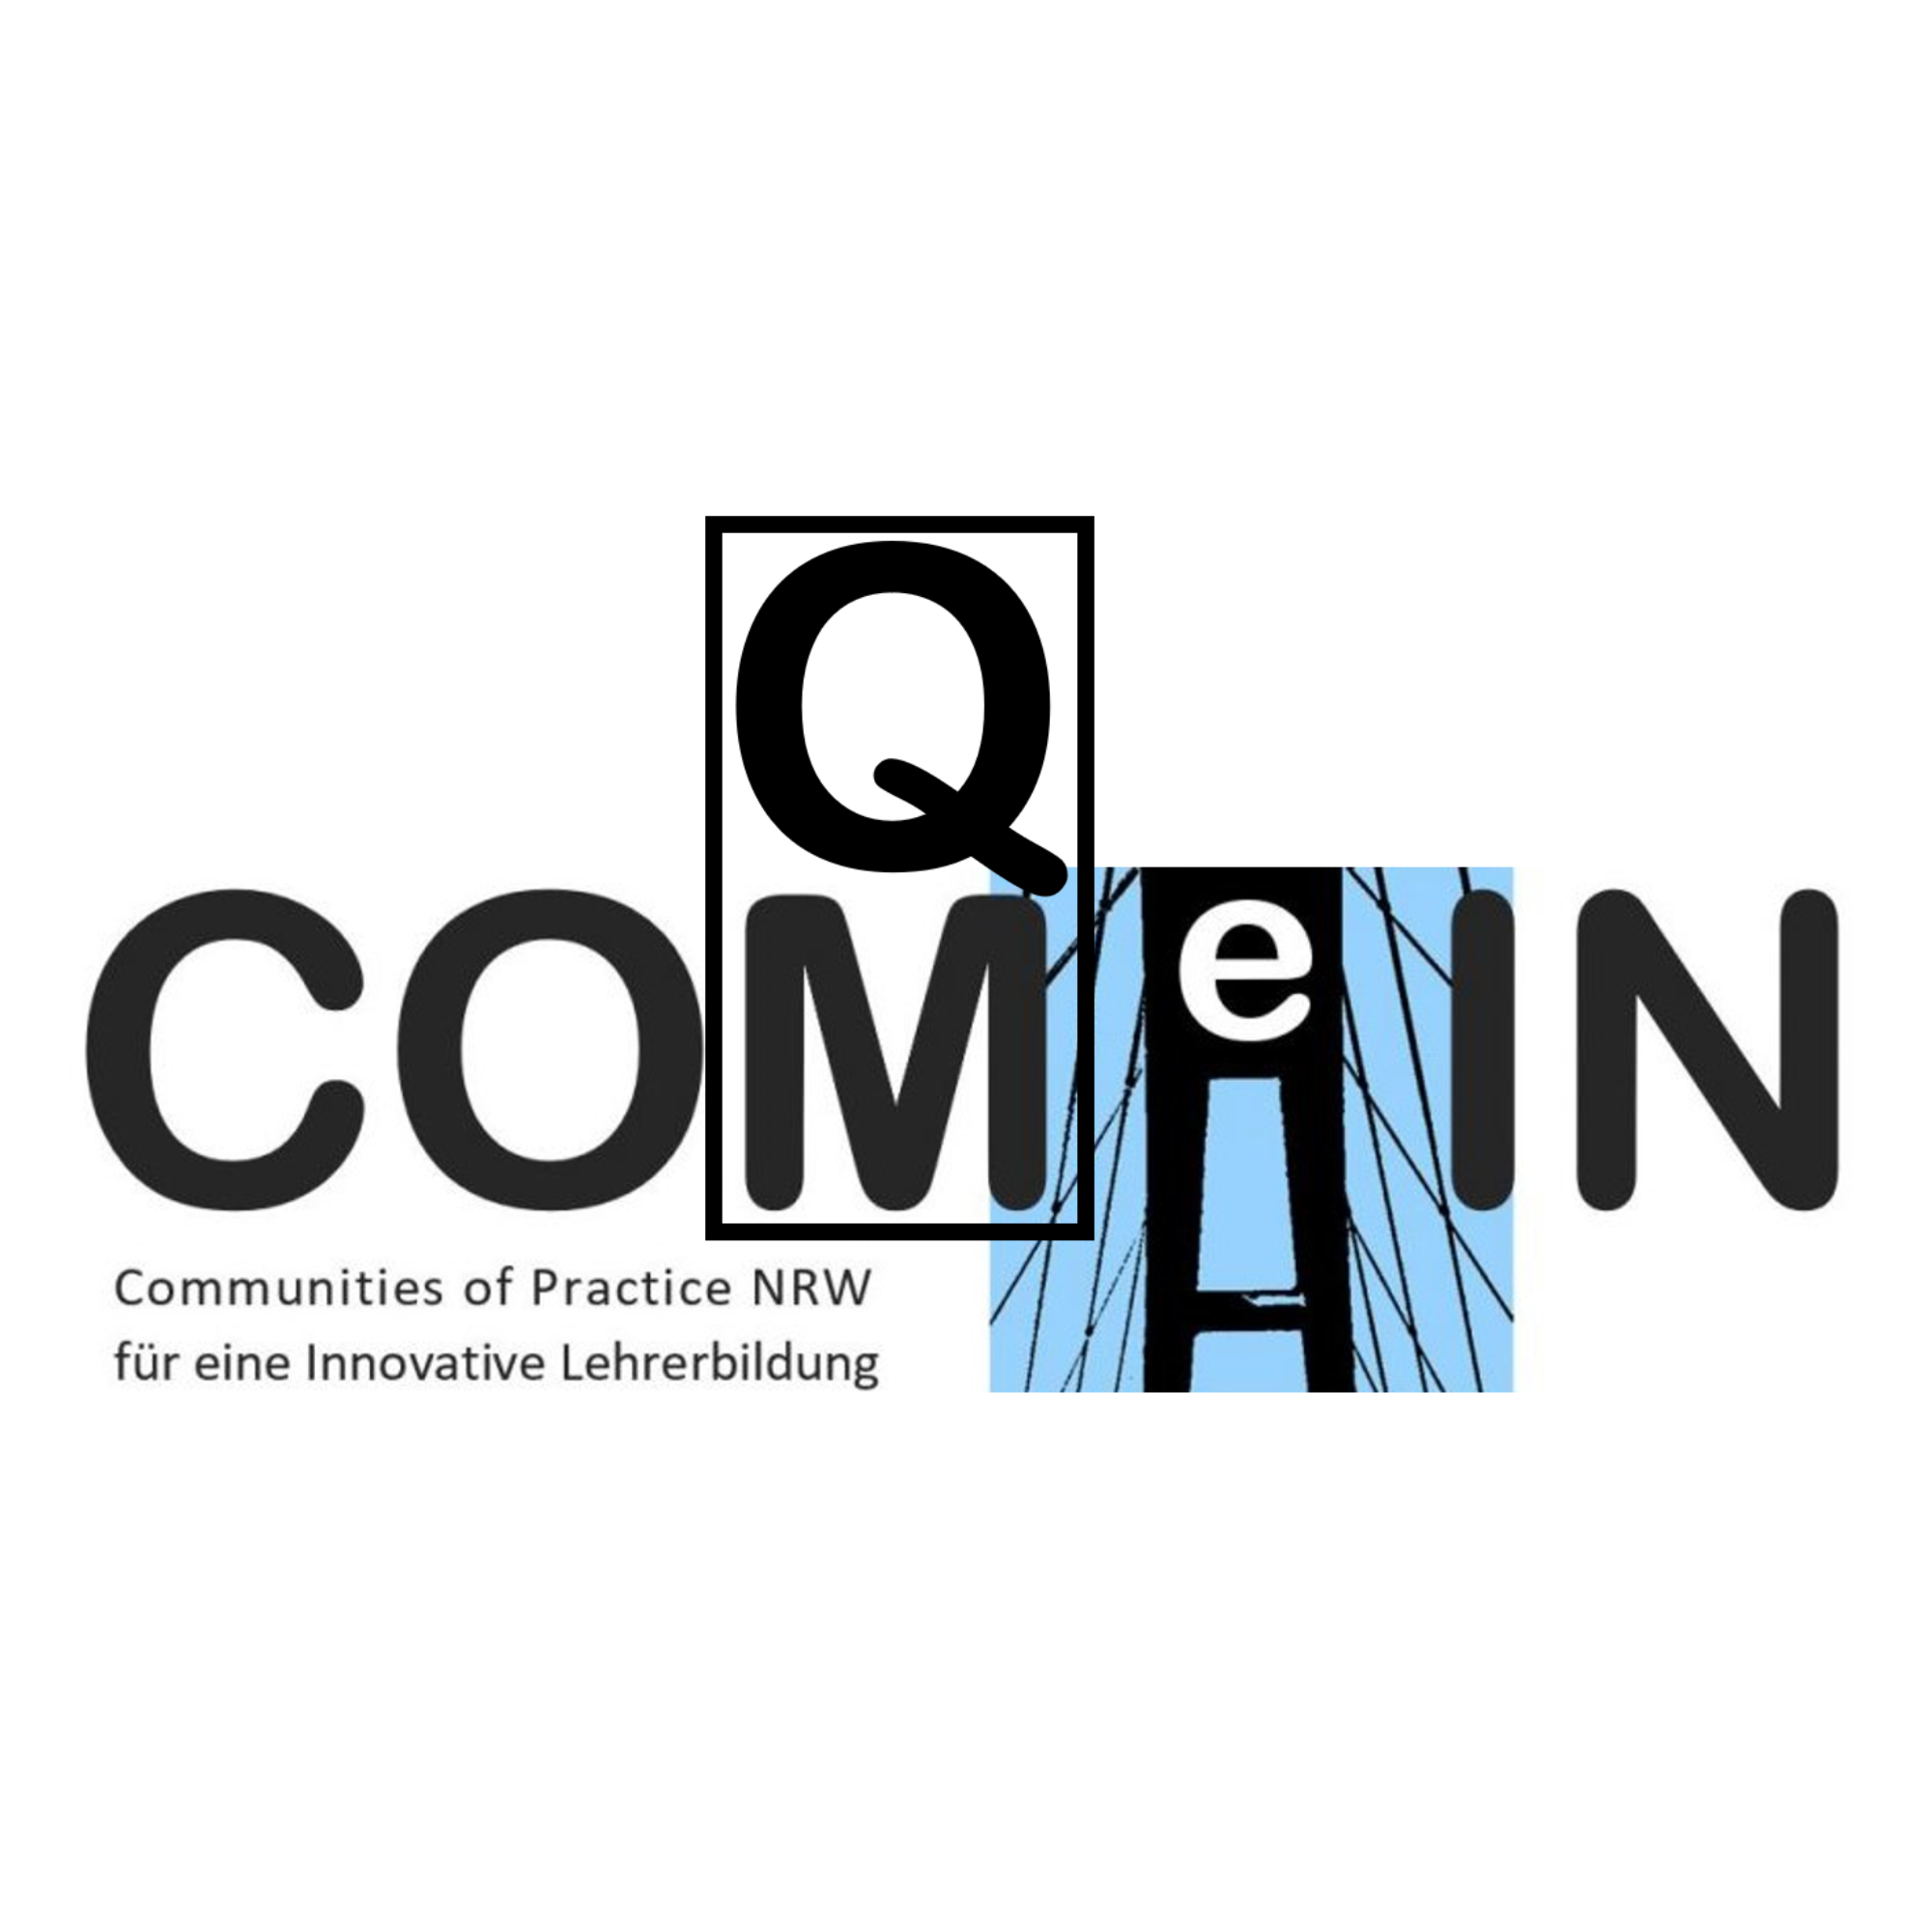 Das Logo besteht aus dem Schriftzug "Come In und QM. Communities of Practice NRW für eine innovative Lehrerbildung.